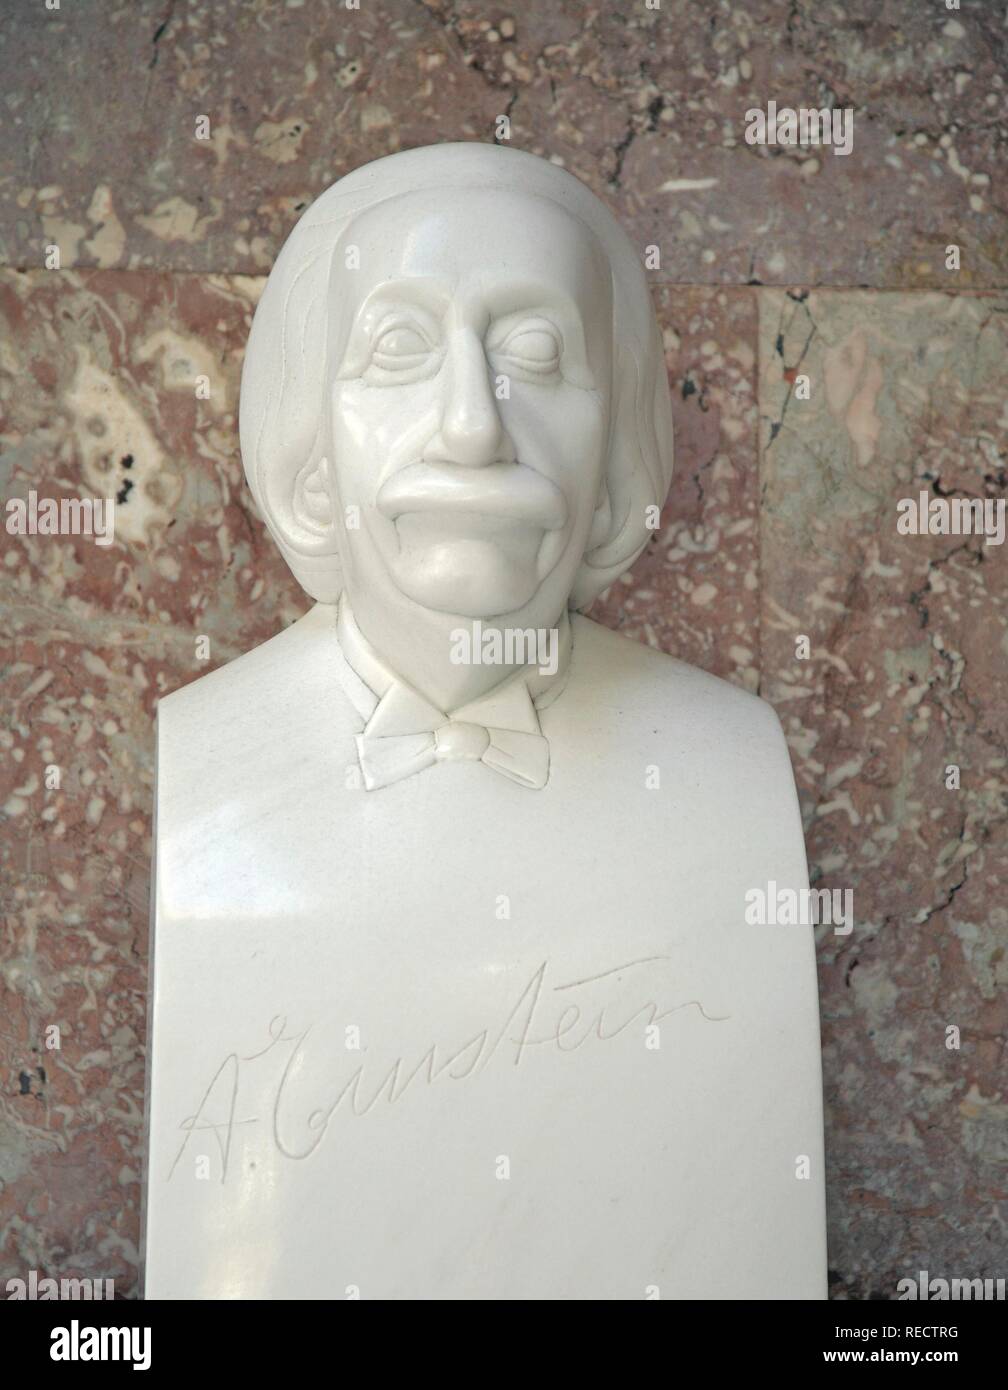 Bust of Albert Einstein, physicist Stock Photo